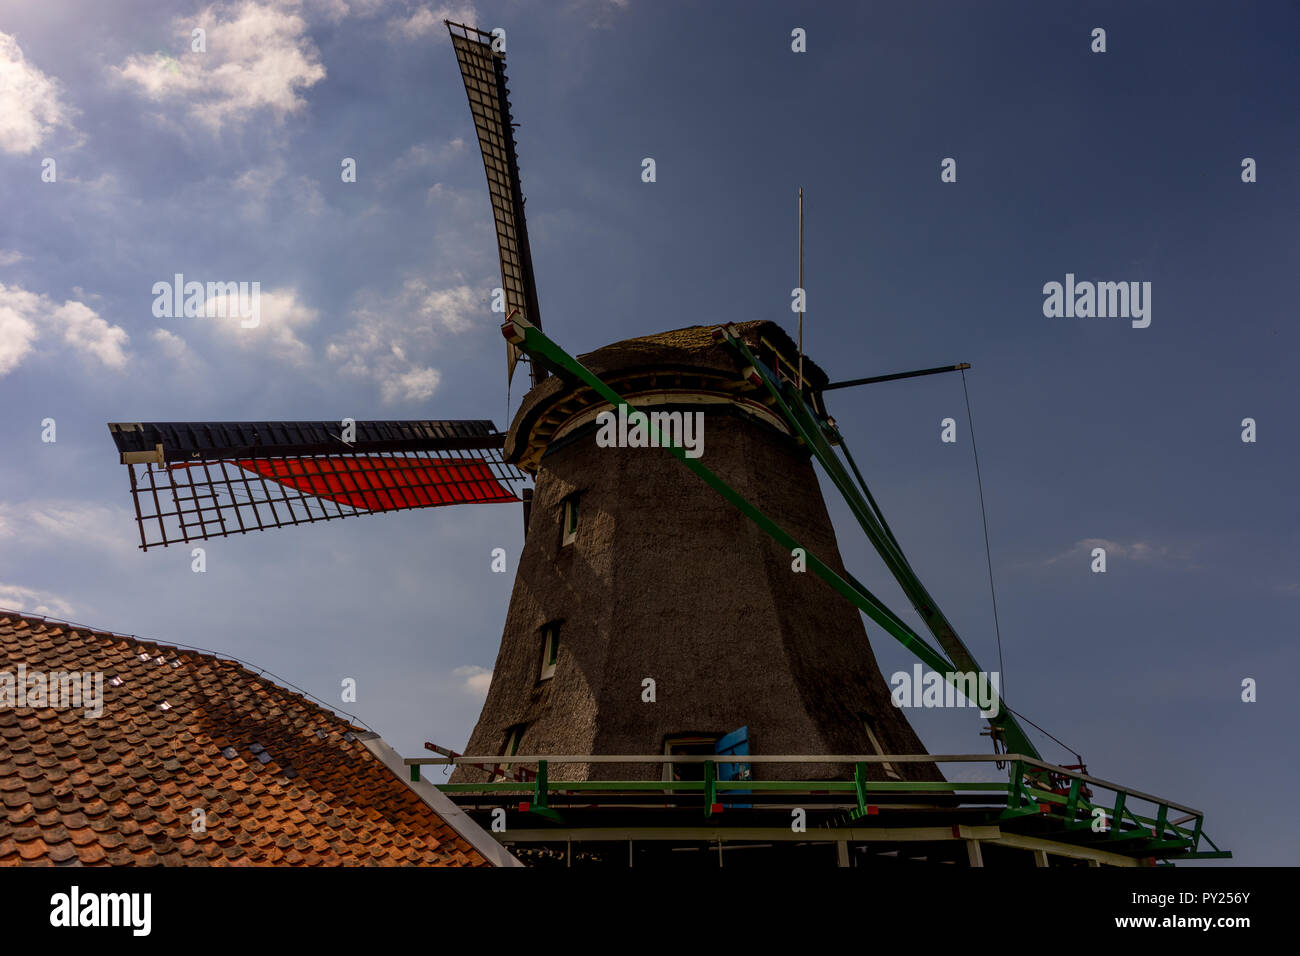 Netherlands, Zaanse Schans, facade of windmill Stock Photo